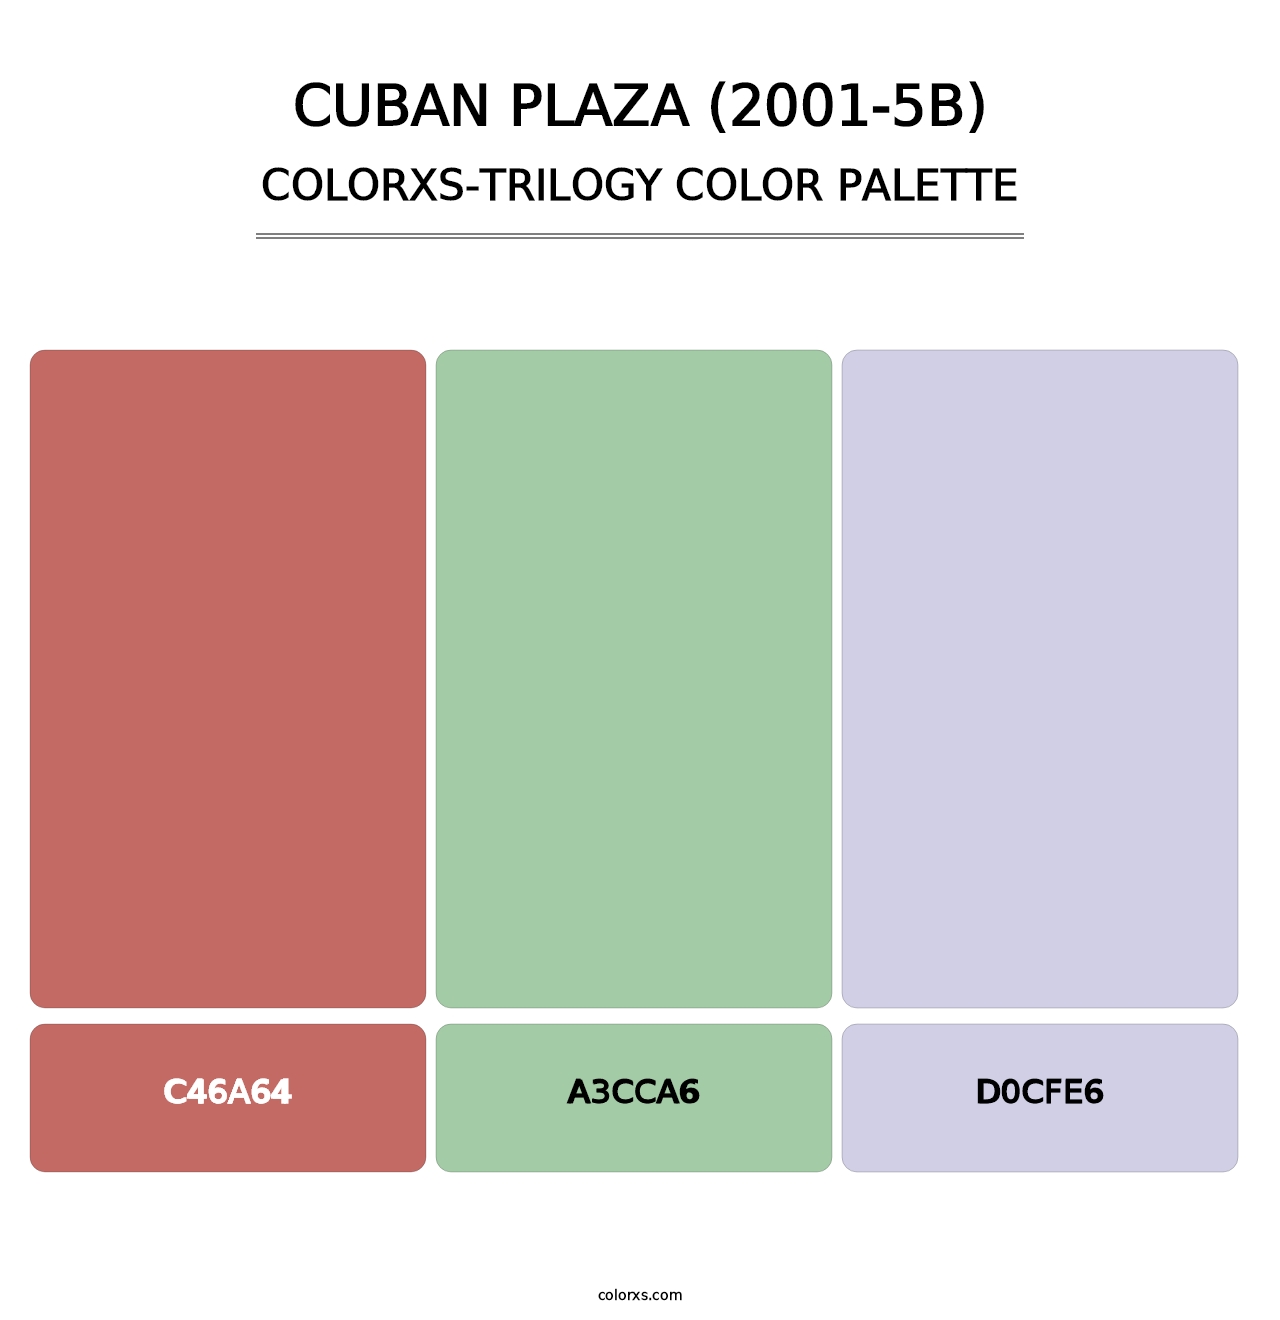 Cuban Plaza (2001-5B) - Colorxs Trilogy Palette